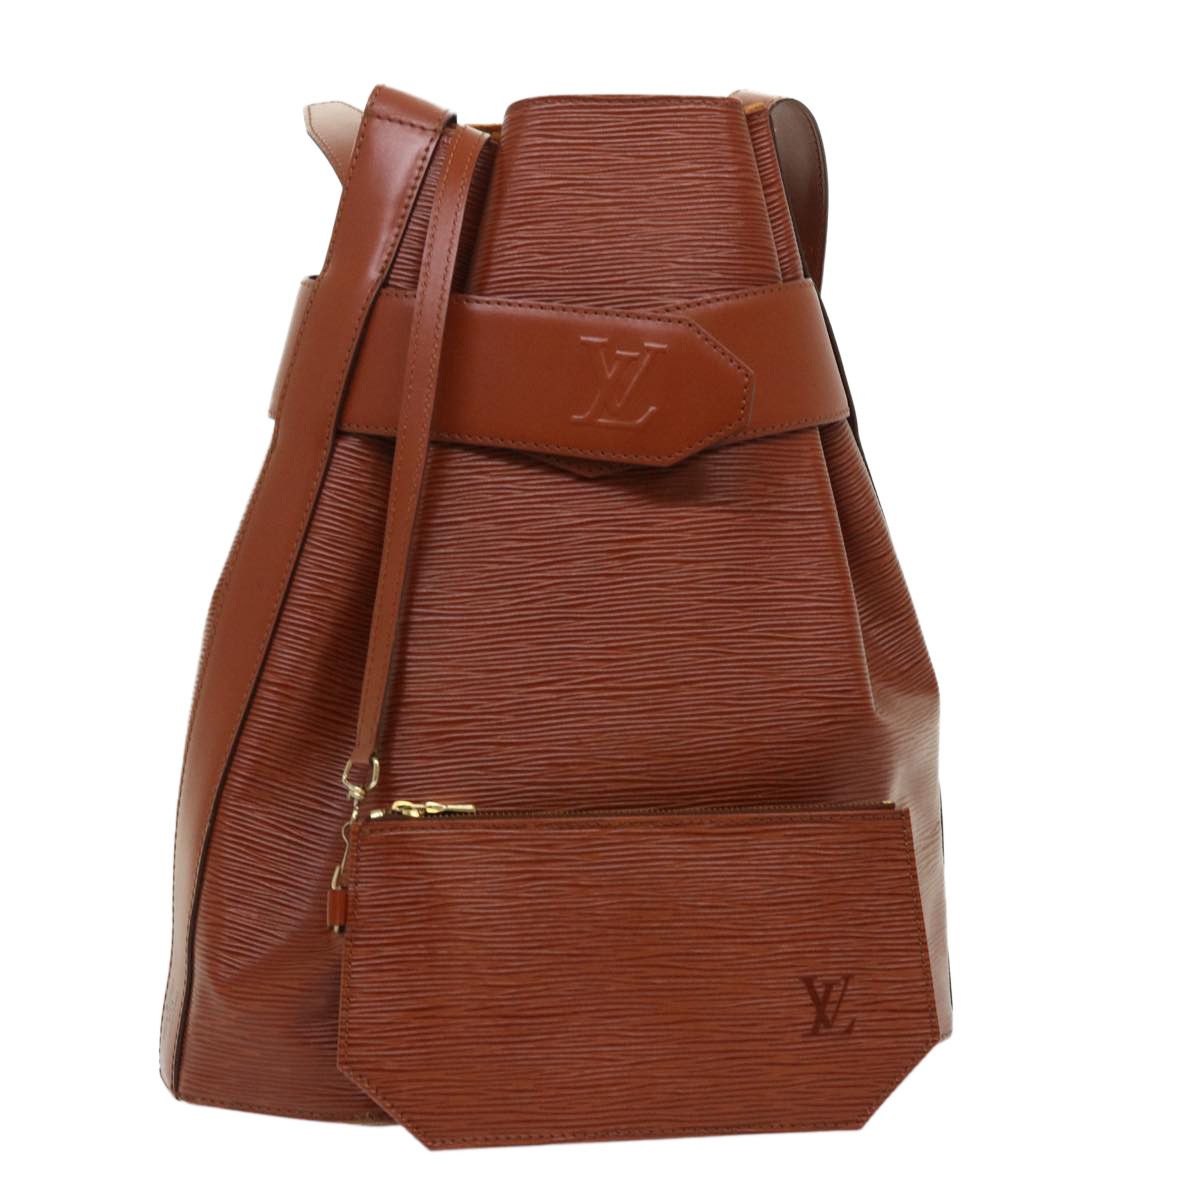 Authentic Louis Vuitton Epi Sac De Paule Shoulder Bag brown M80193